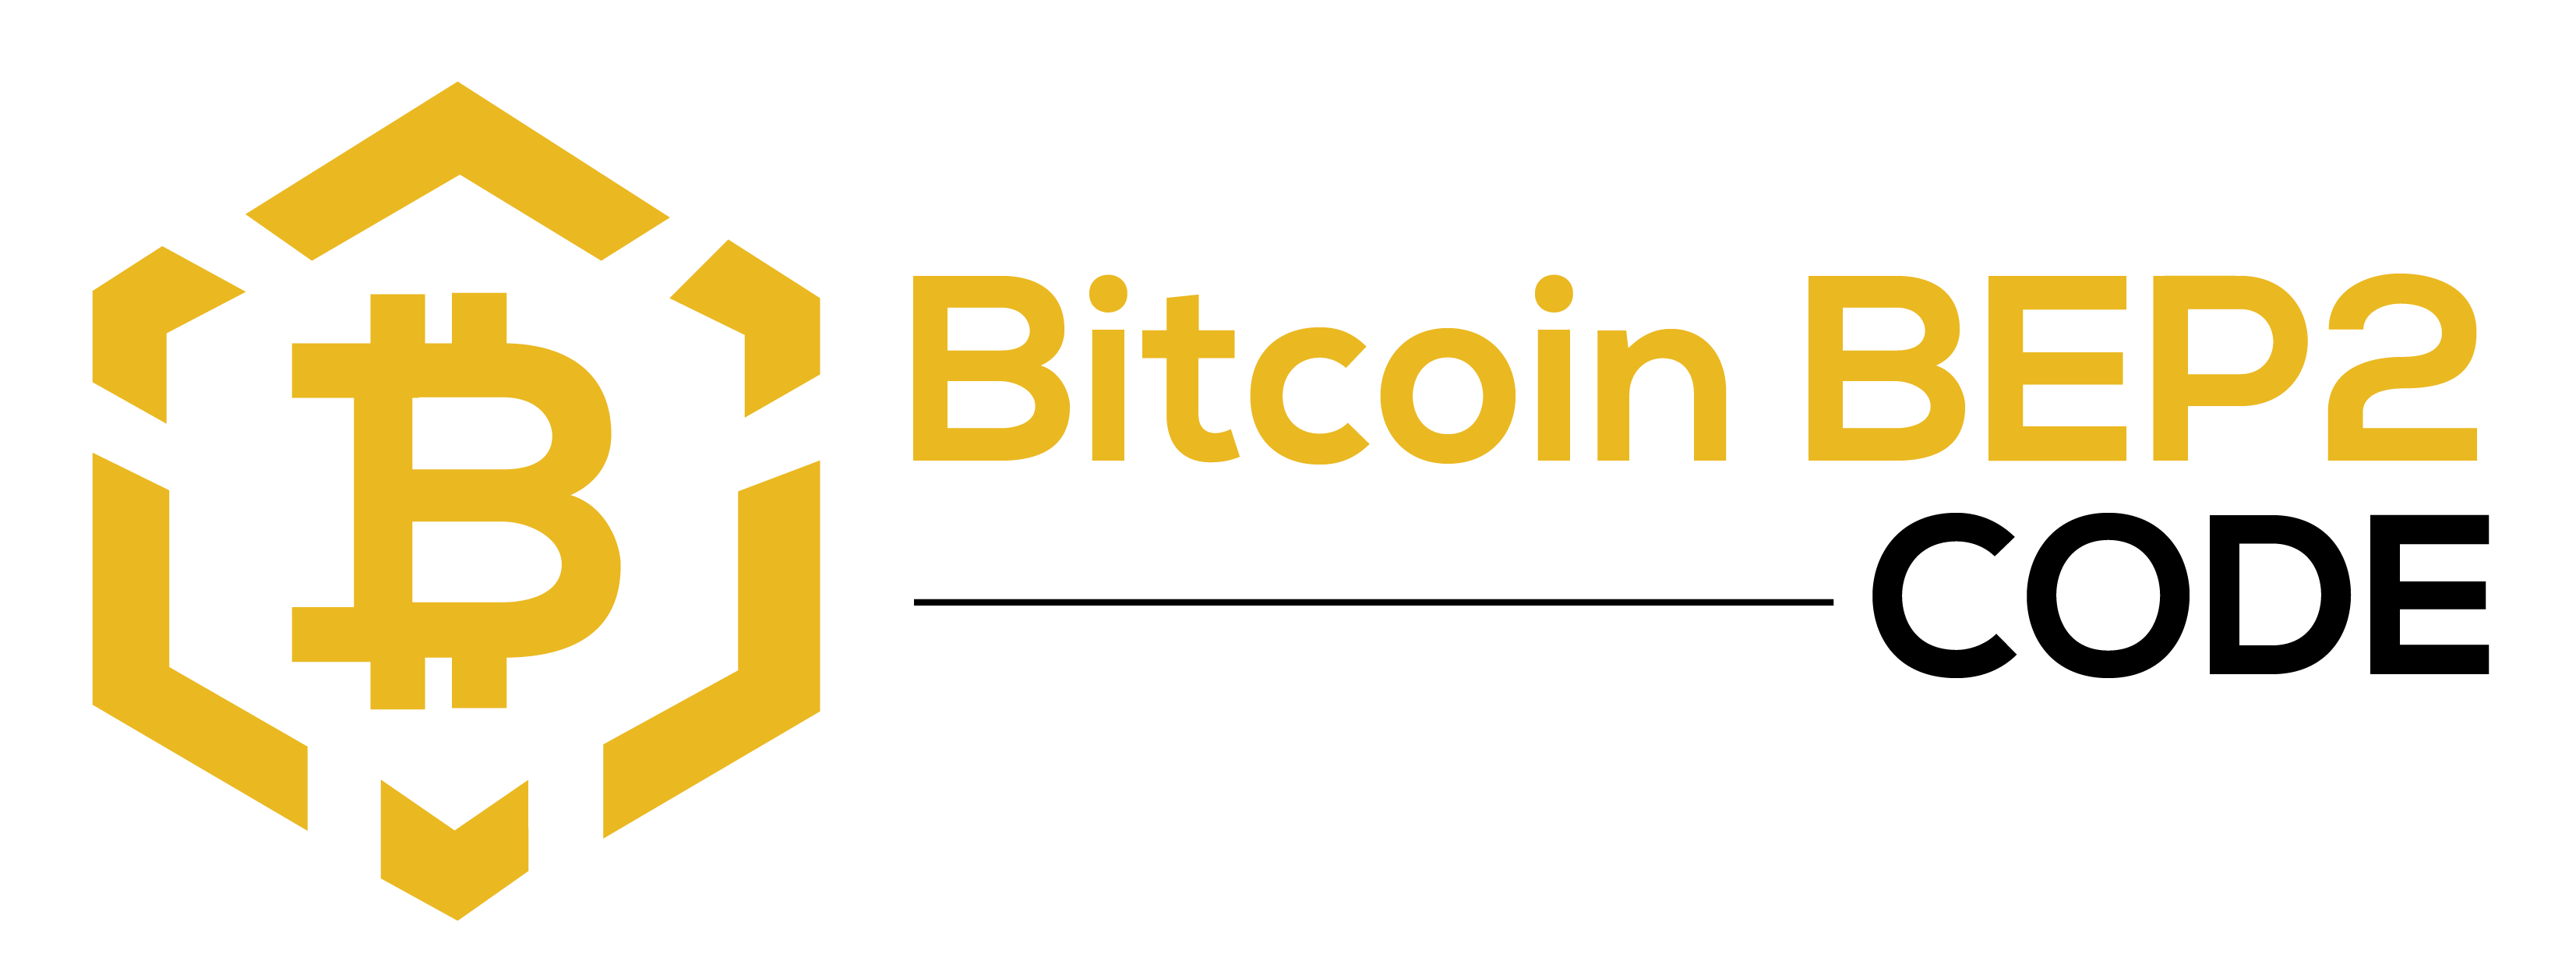 Bitcoin BEP2 Code - Bitcoin BEP2 Code समुदाय के सदस्य बनें